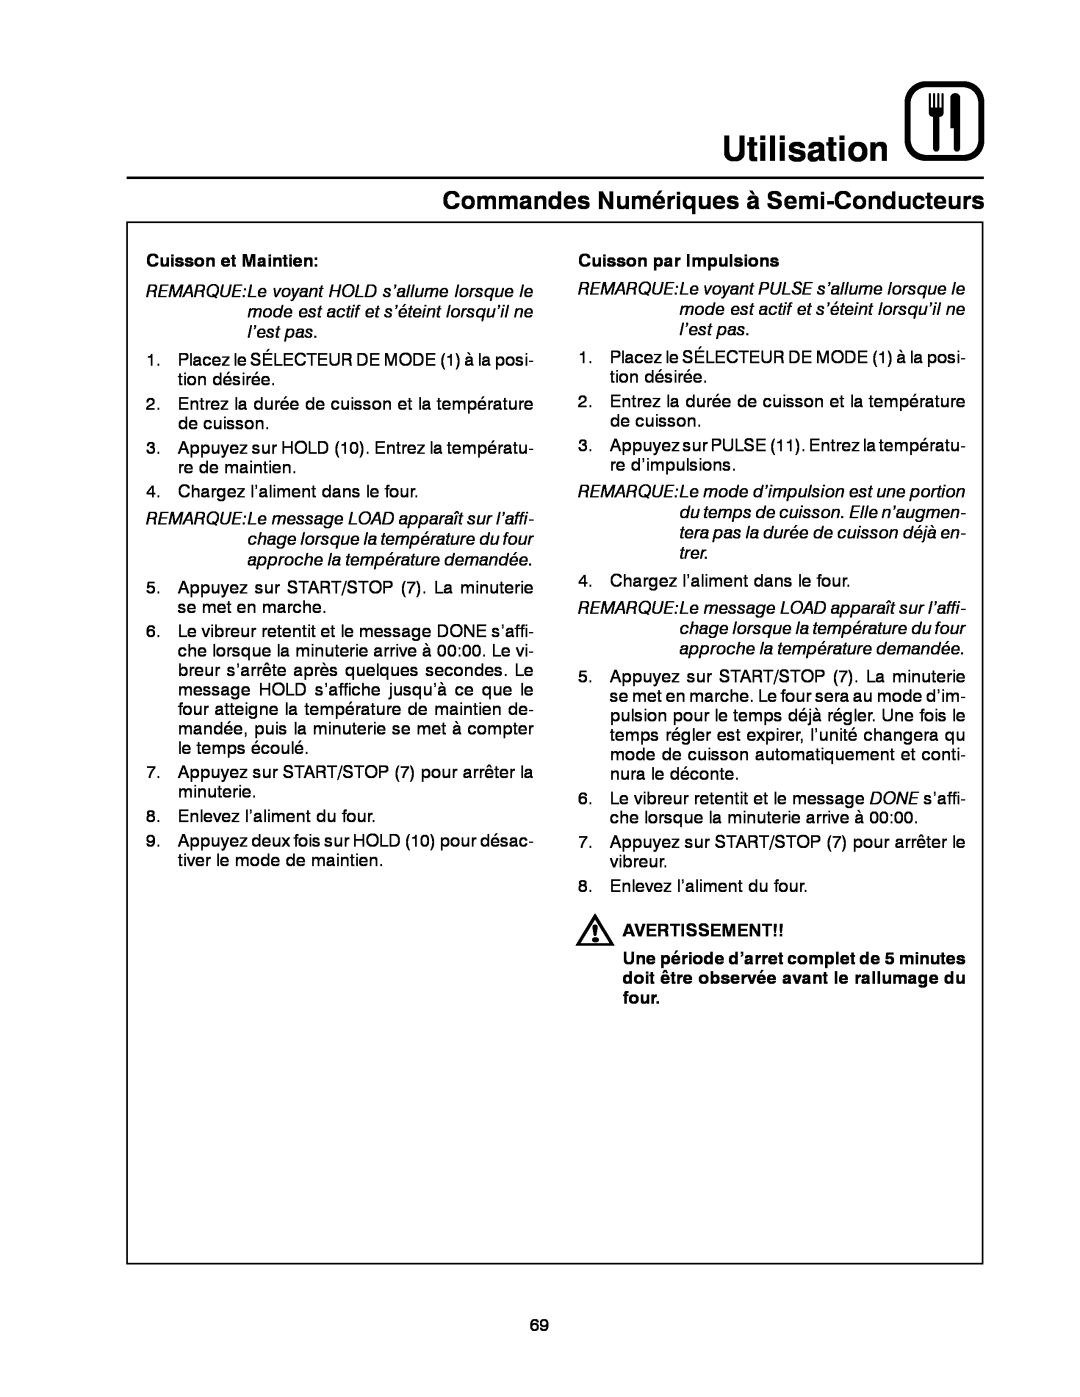 Blodgett DFG-100 manual Utilisation, Commandes Numériques à Semi-Conducteurs, Cuisson et Maintien, Cuisson par Impulsions 